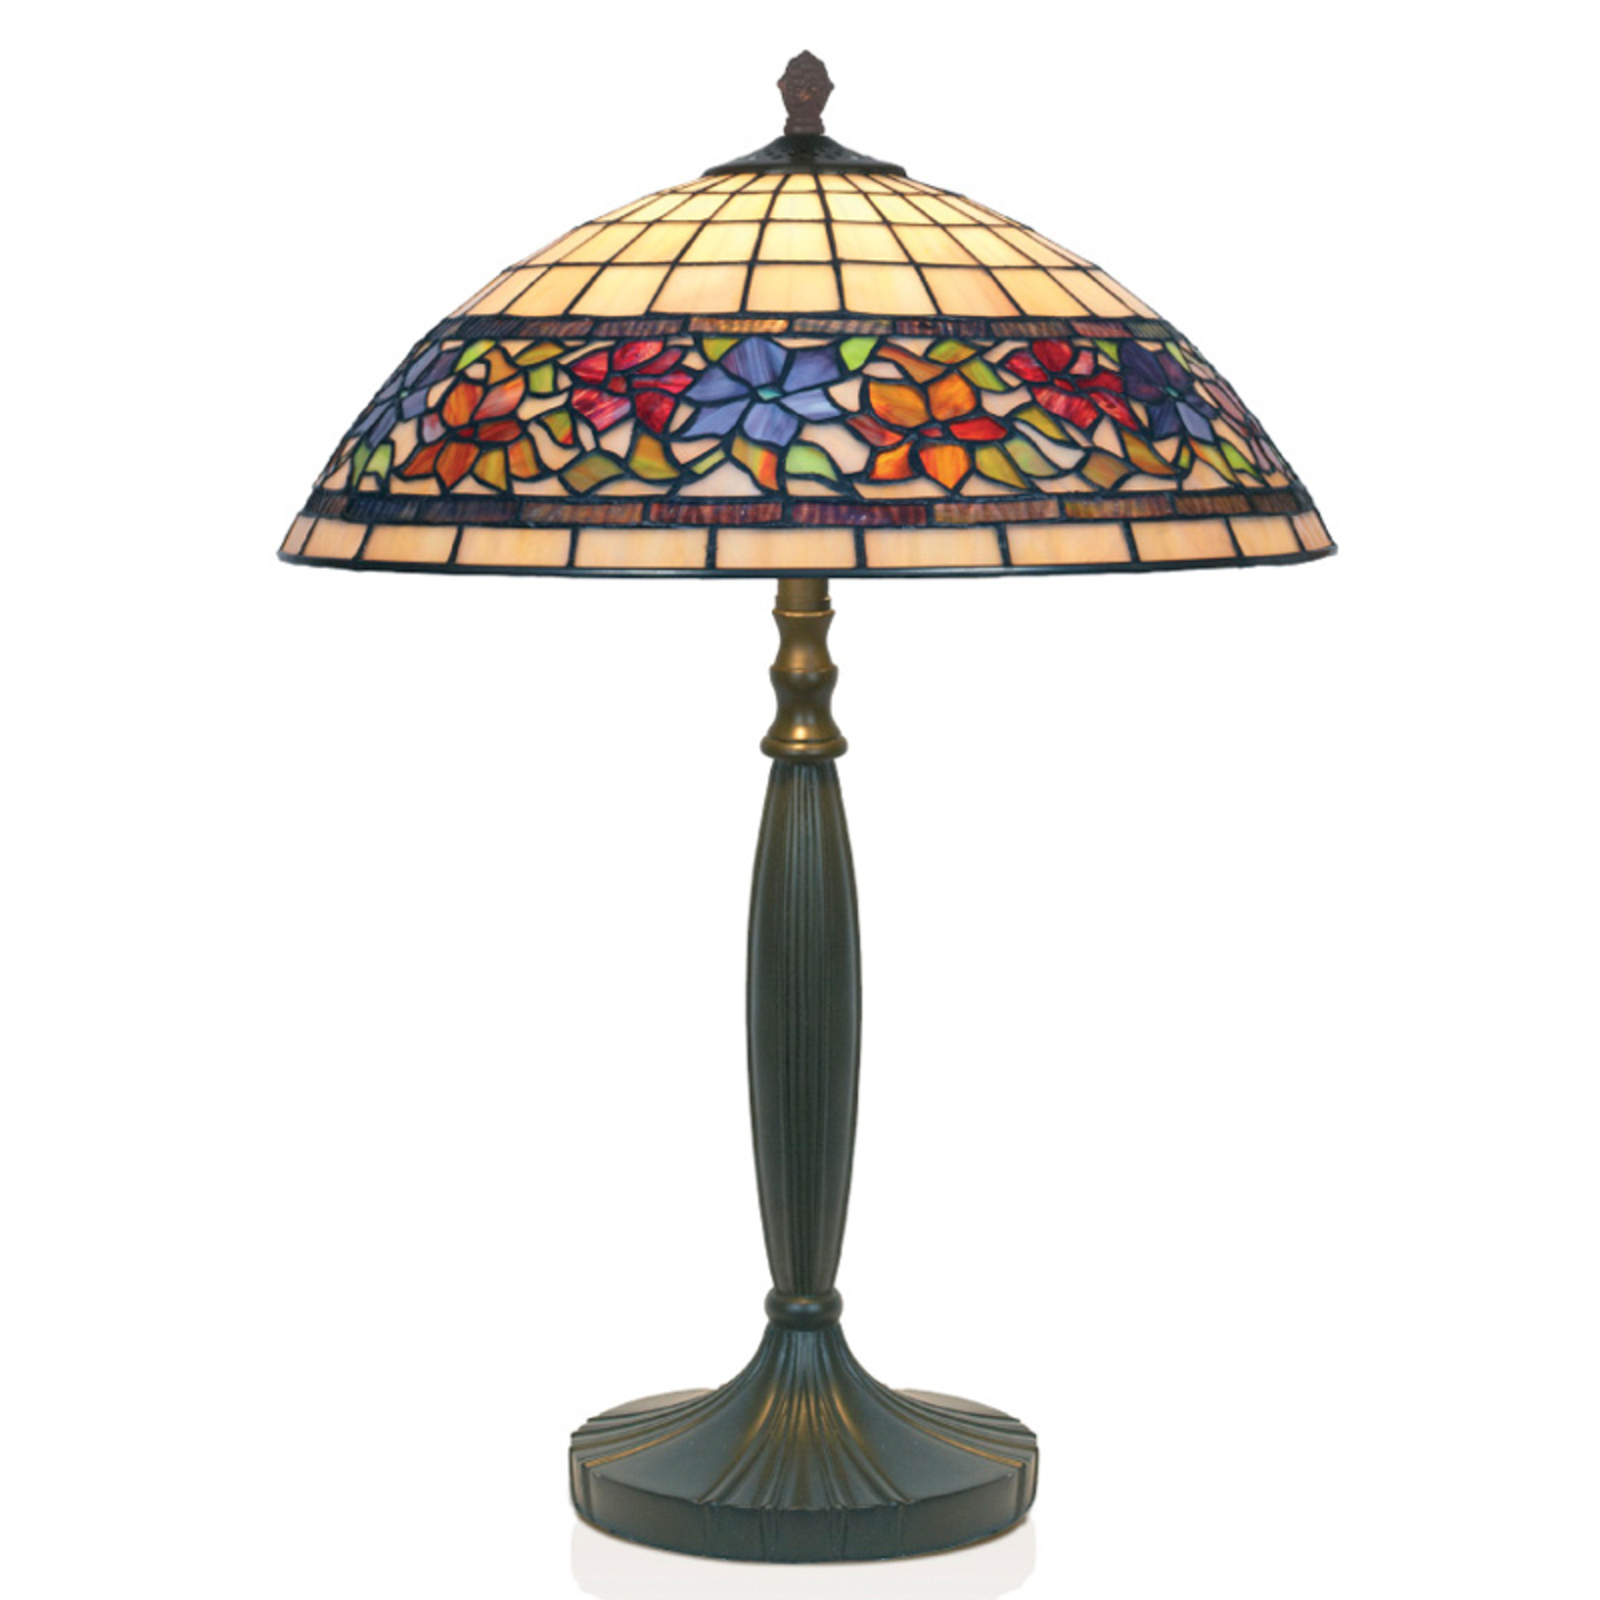 Flora stolna lampa u Tiffany stilu otvorena dolje 62cm